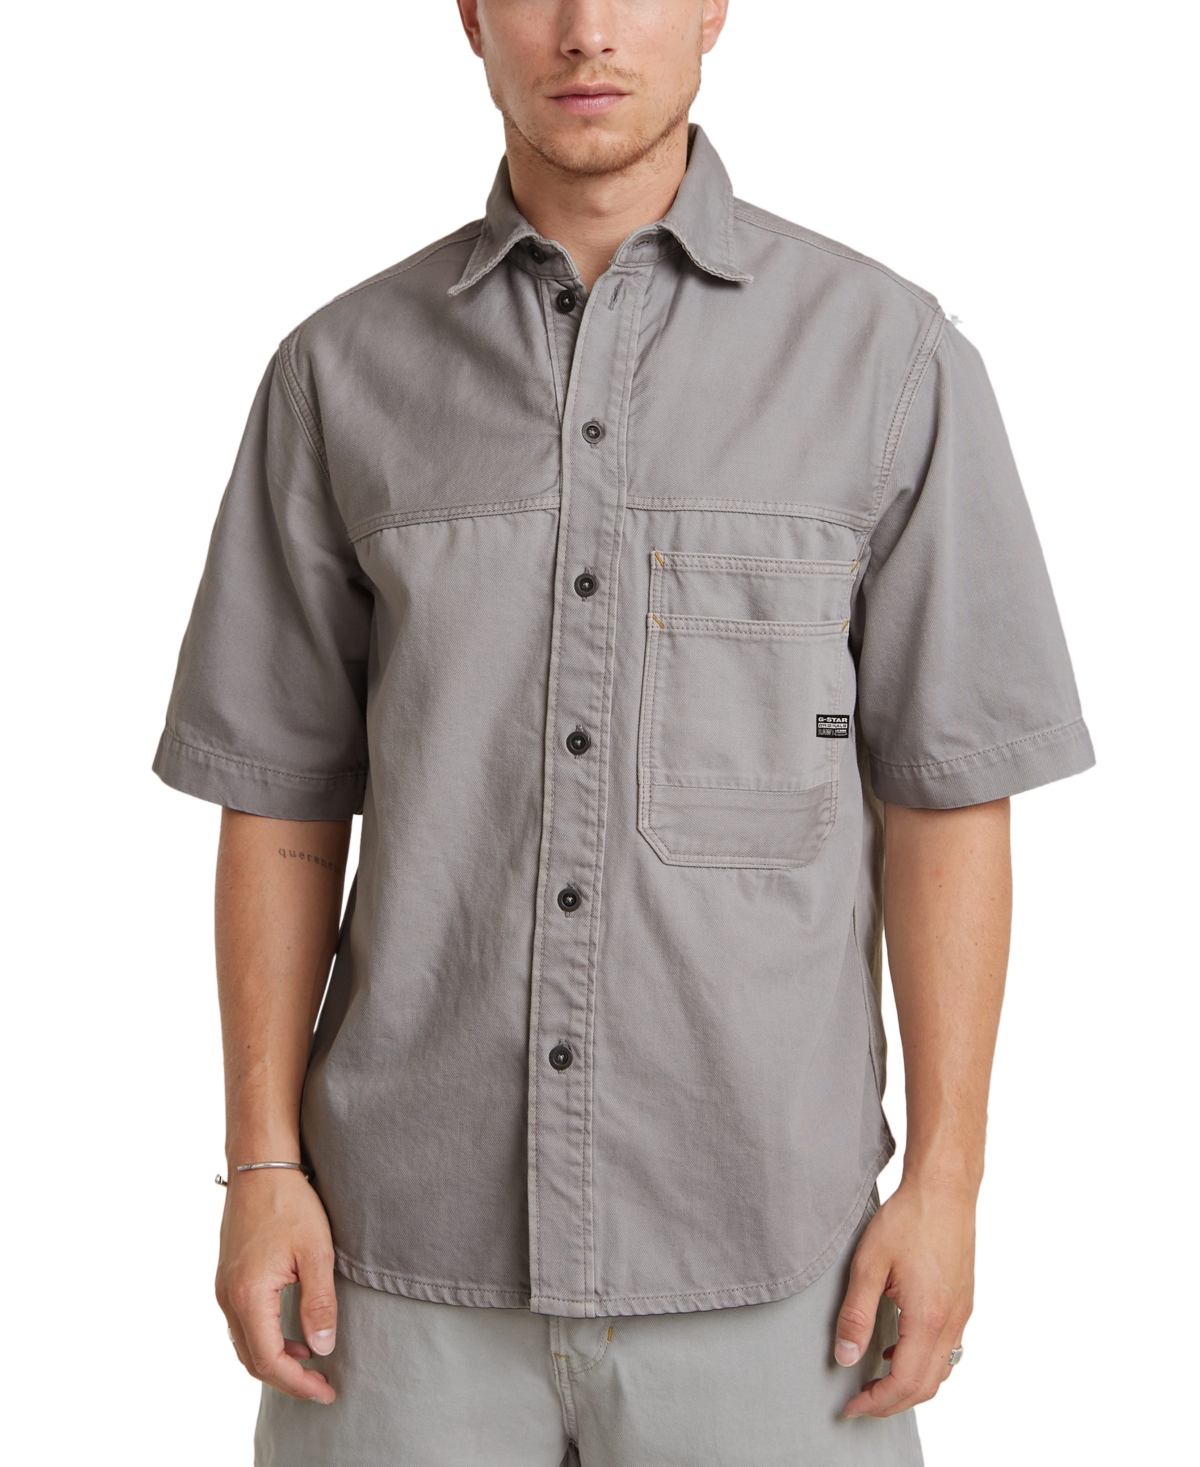 Men's Relaxed-Fit Double-Pocket Shirt - Renaissanc